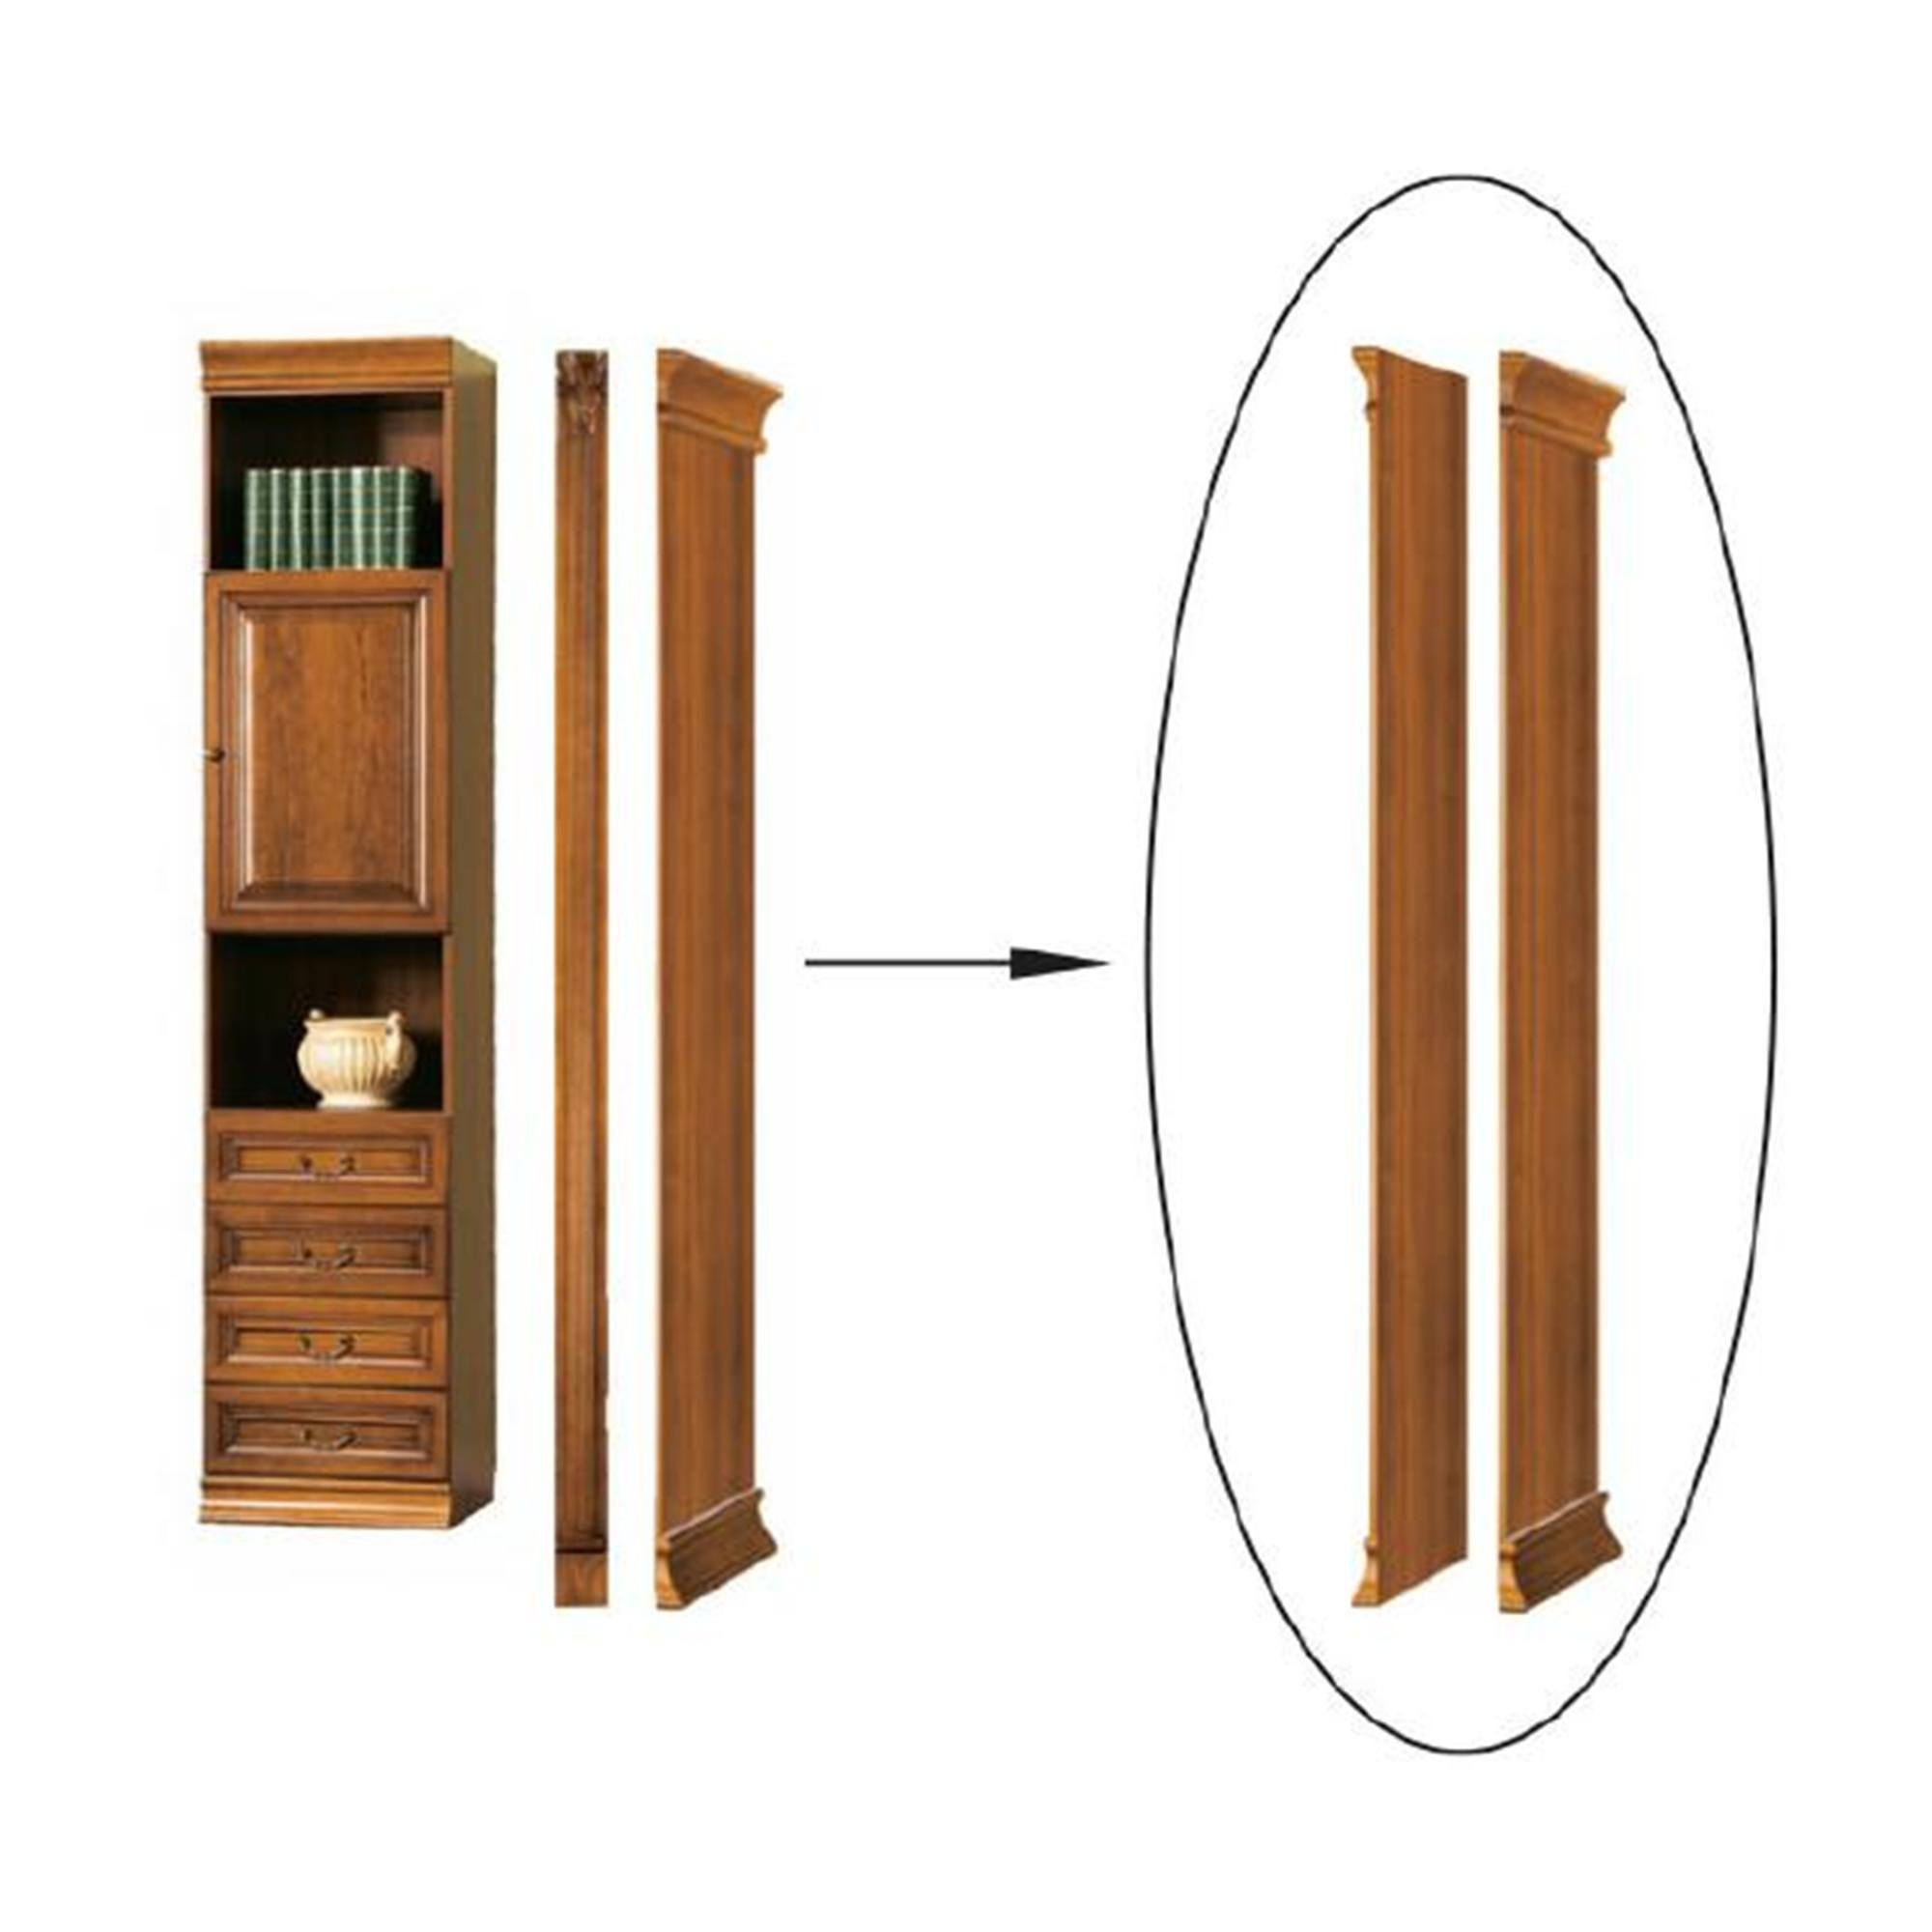 JVmoebel Bücherturm, Klassisches Abschlußelement für Bücherschrank Bücherregal Schrank - Model SE-B2 | Büchertürme